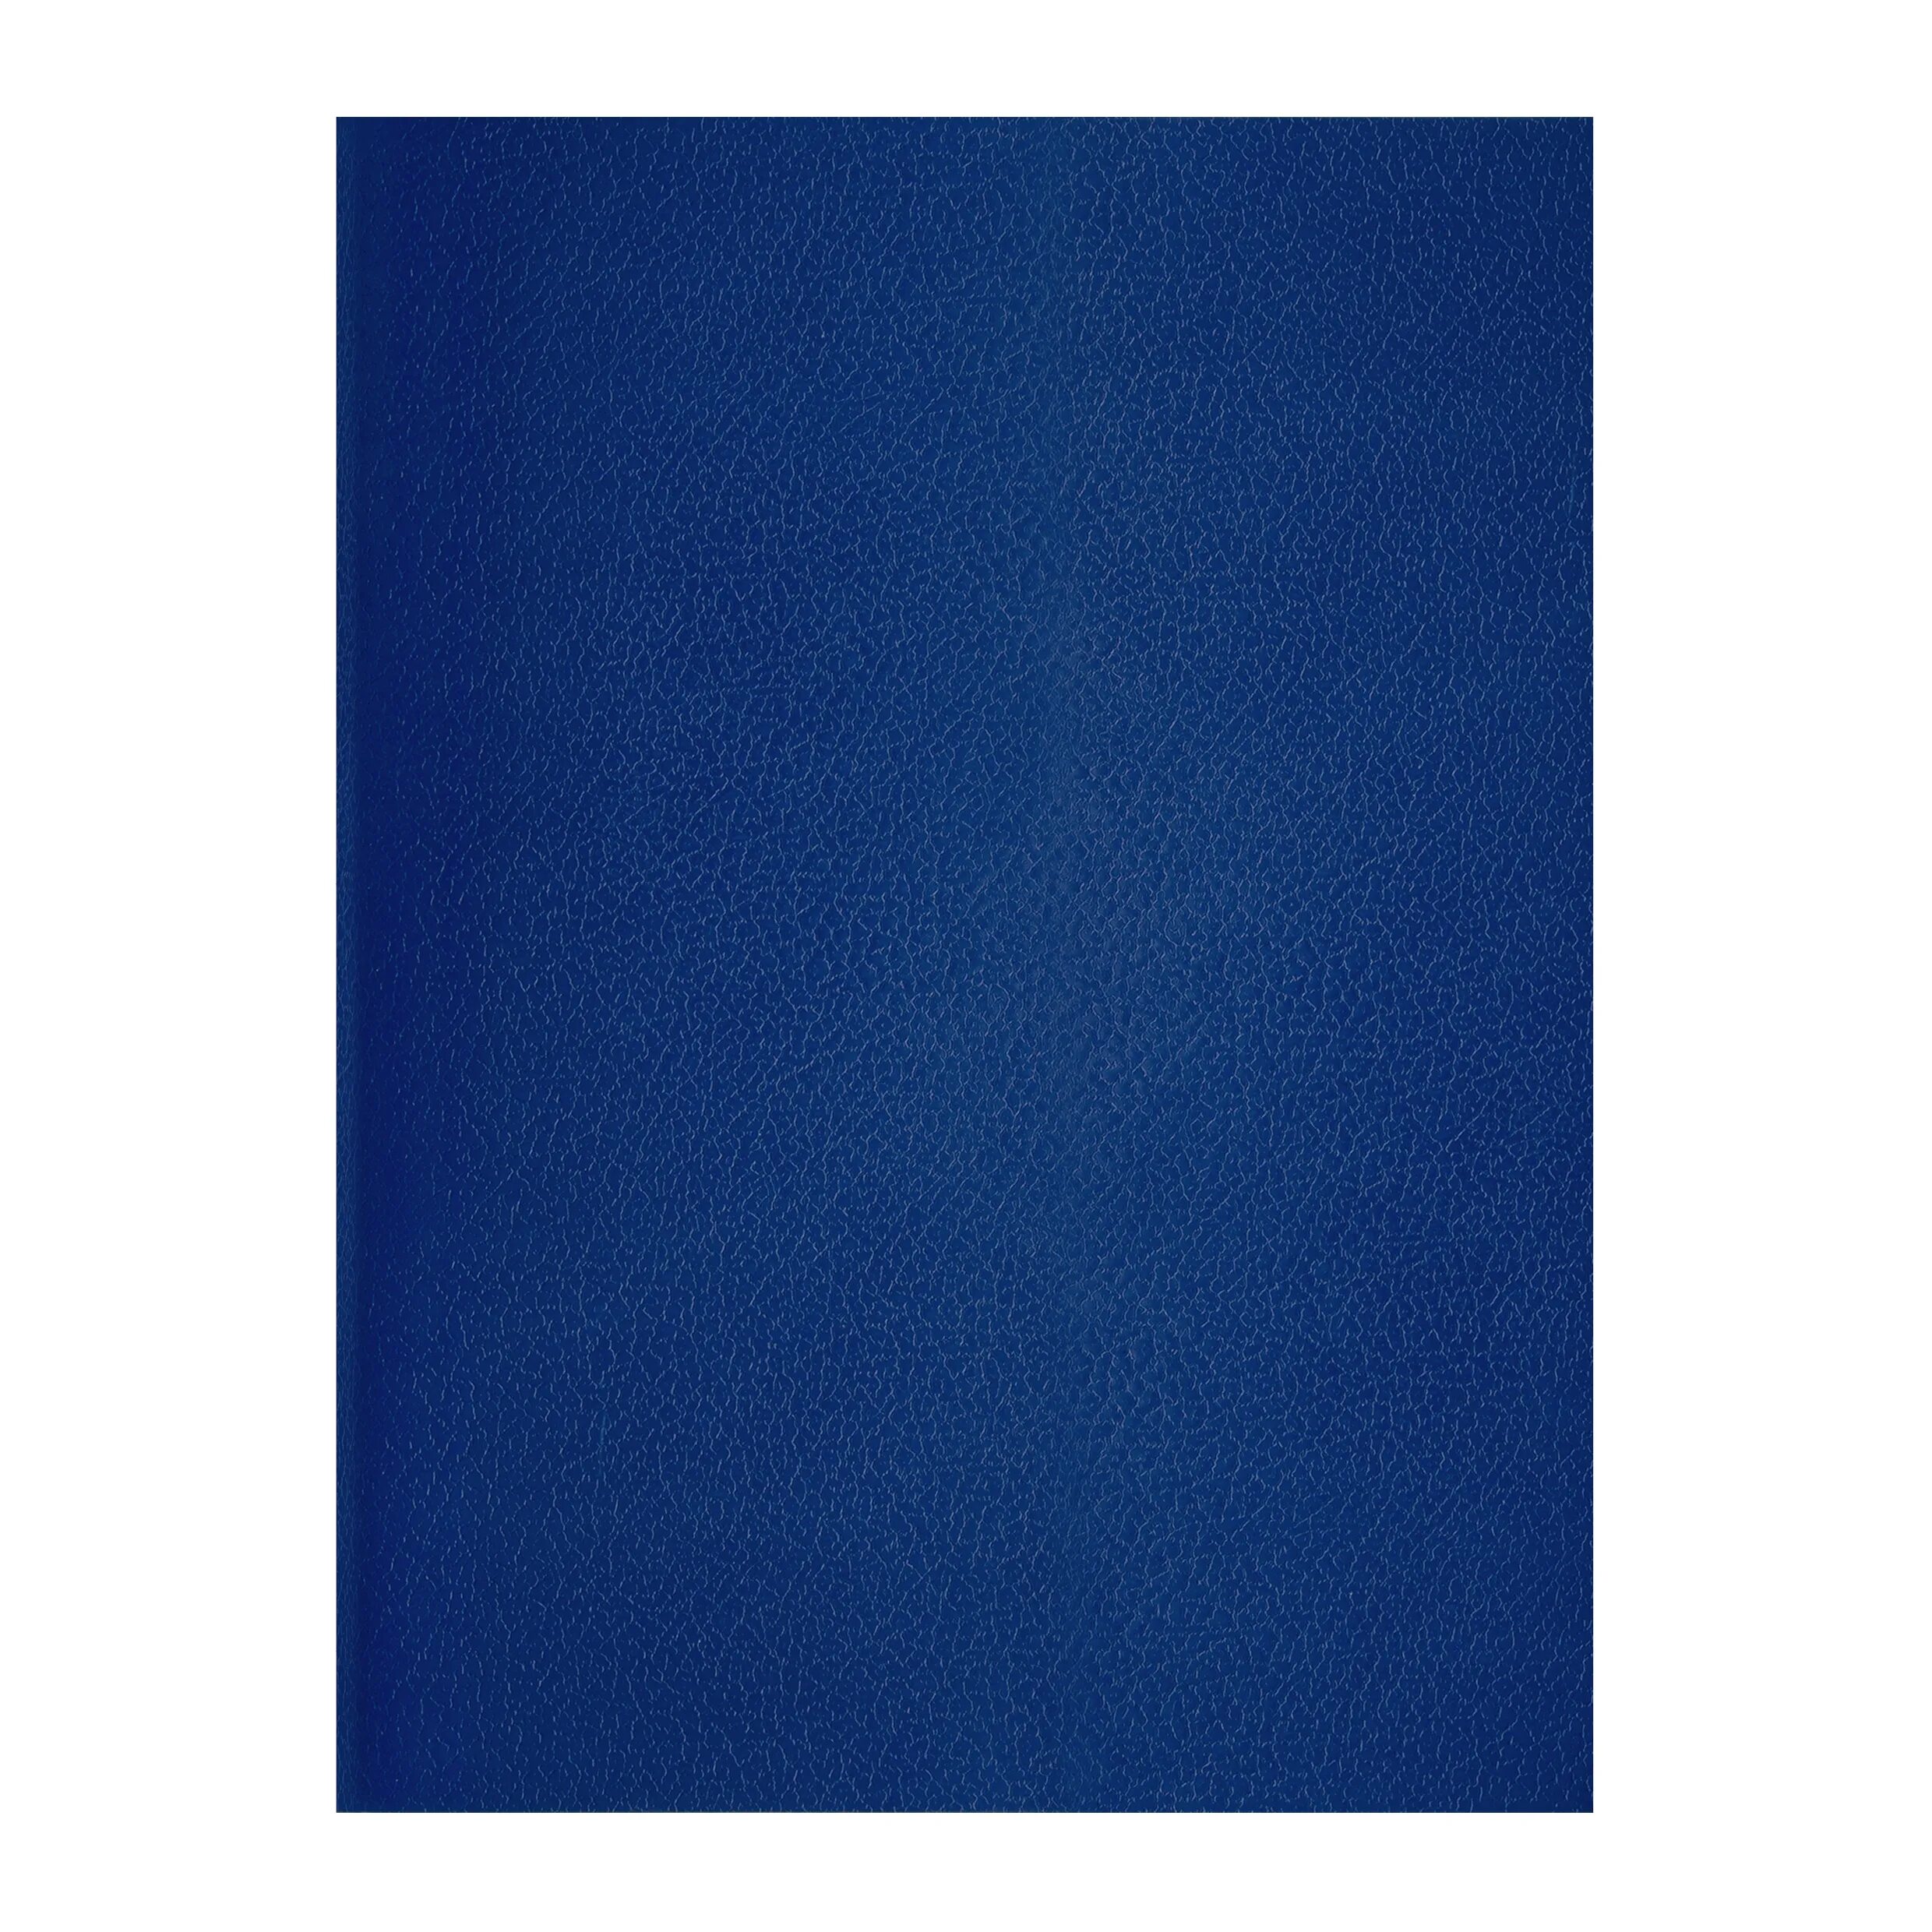 Книга синяя тетрадь. Тетрадь бумвинил 96 листов клетка. Тетрадь 96 листов а4 бумвинил скрепка. Синяя обложка. Материал бумвинил.